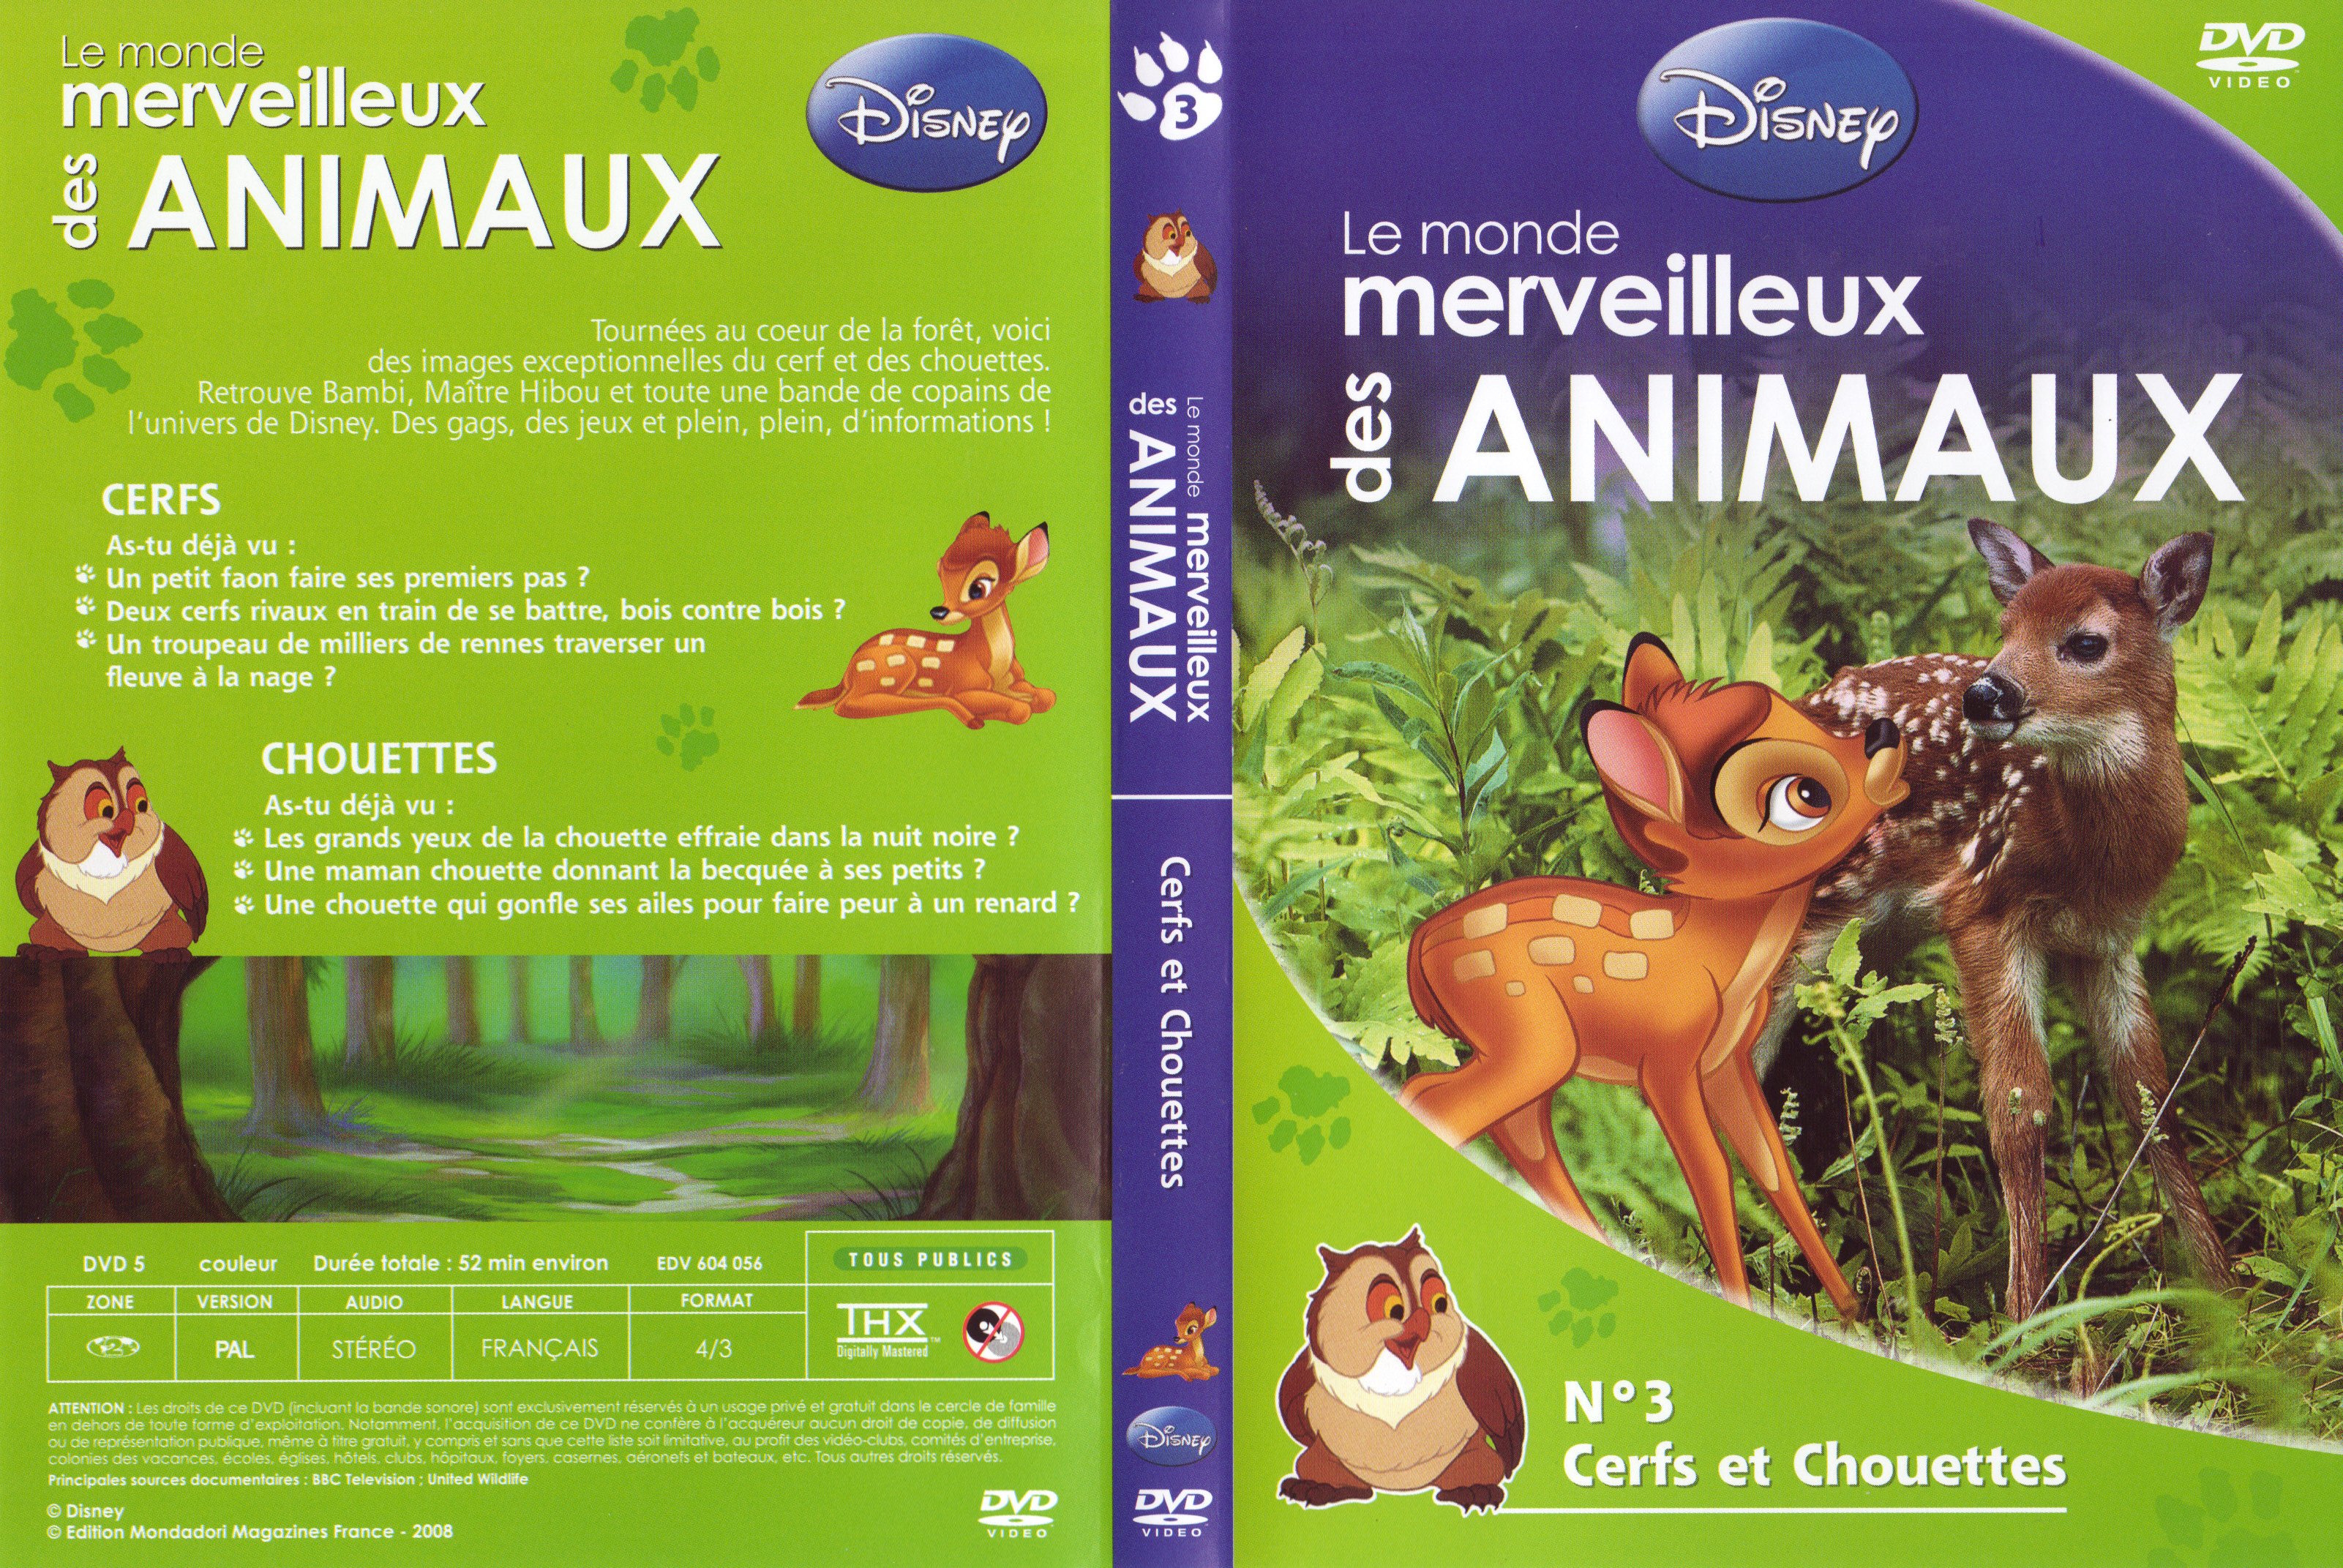 Jaquette DVD Le monde merveilleux des animaux - Cerfs et Chouettes